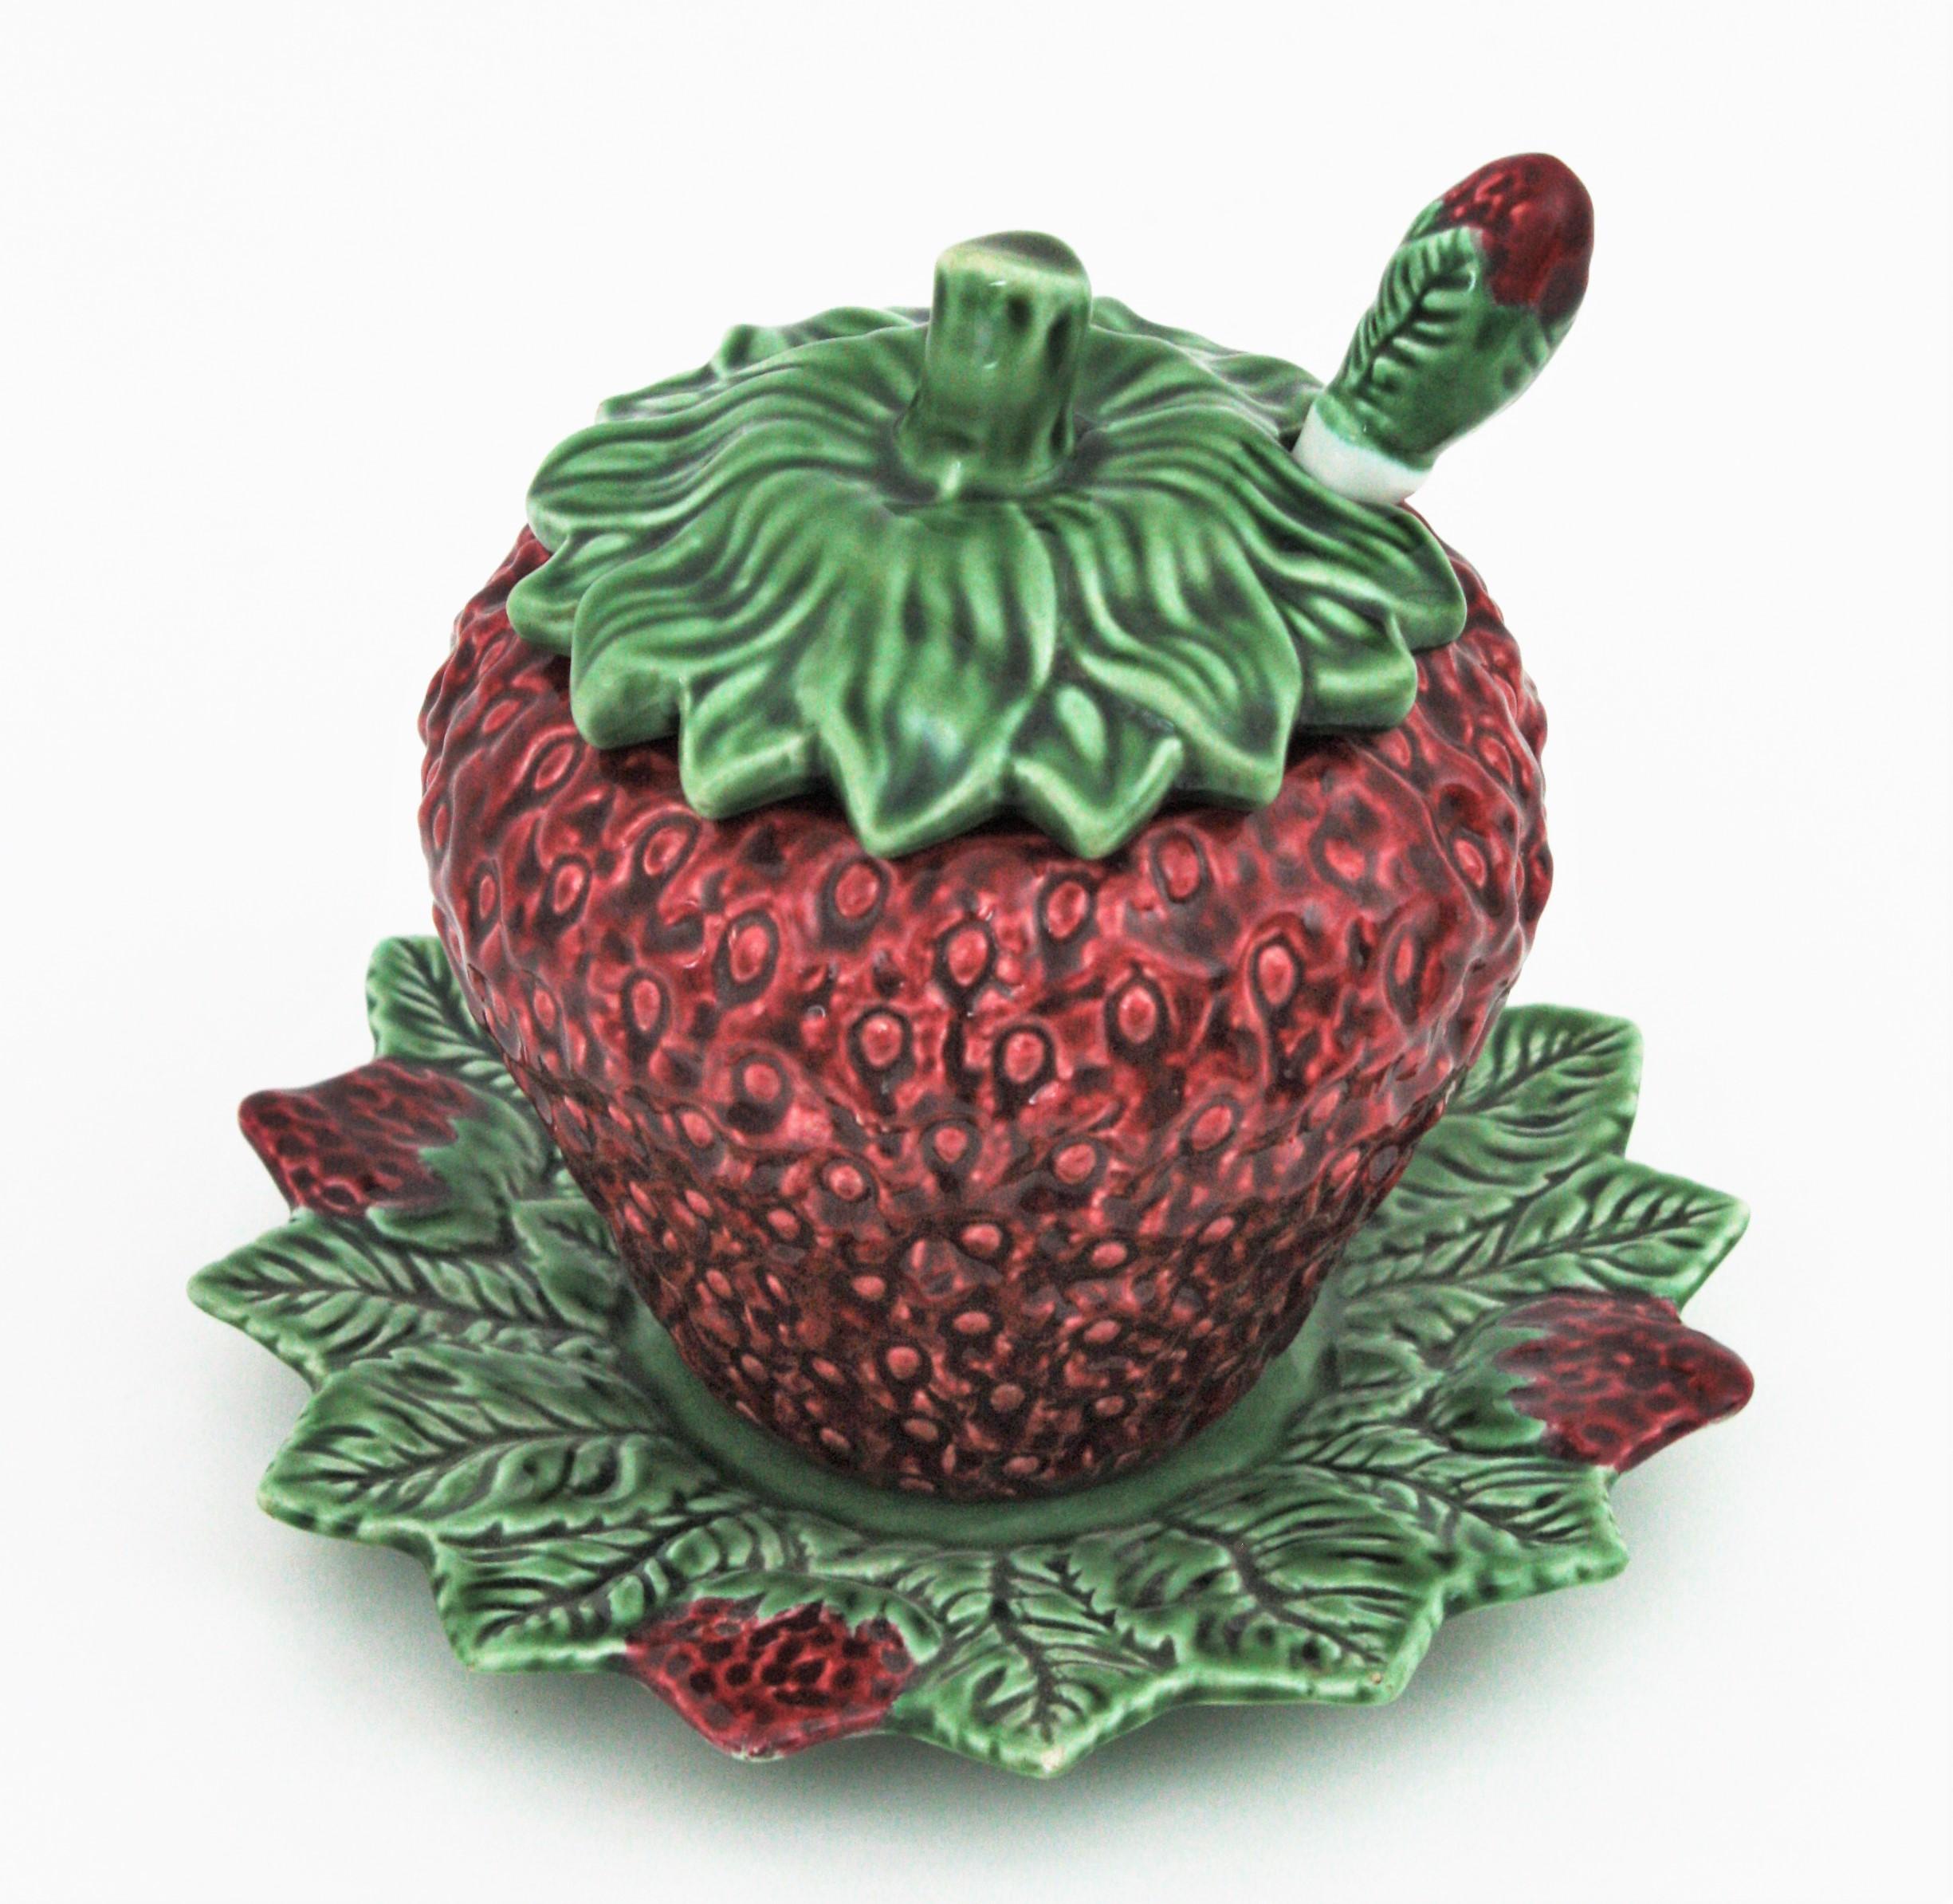 Soupière en céramique Majolica blanche et verte en forme de fraise. Fabriqué par Bordalo Pinheiro, Portugal, années 1960.
Cette jolie soupière a un design très réaliste avec des feuilles sur le dessus. Une assiette de service en forme de feuille et